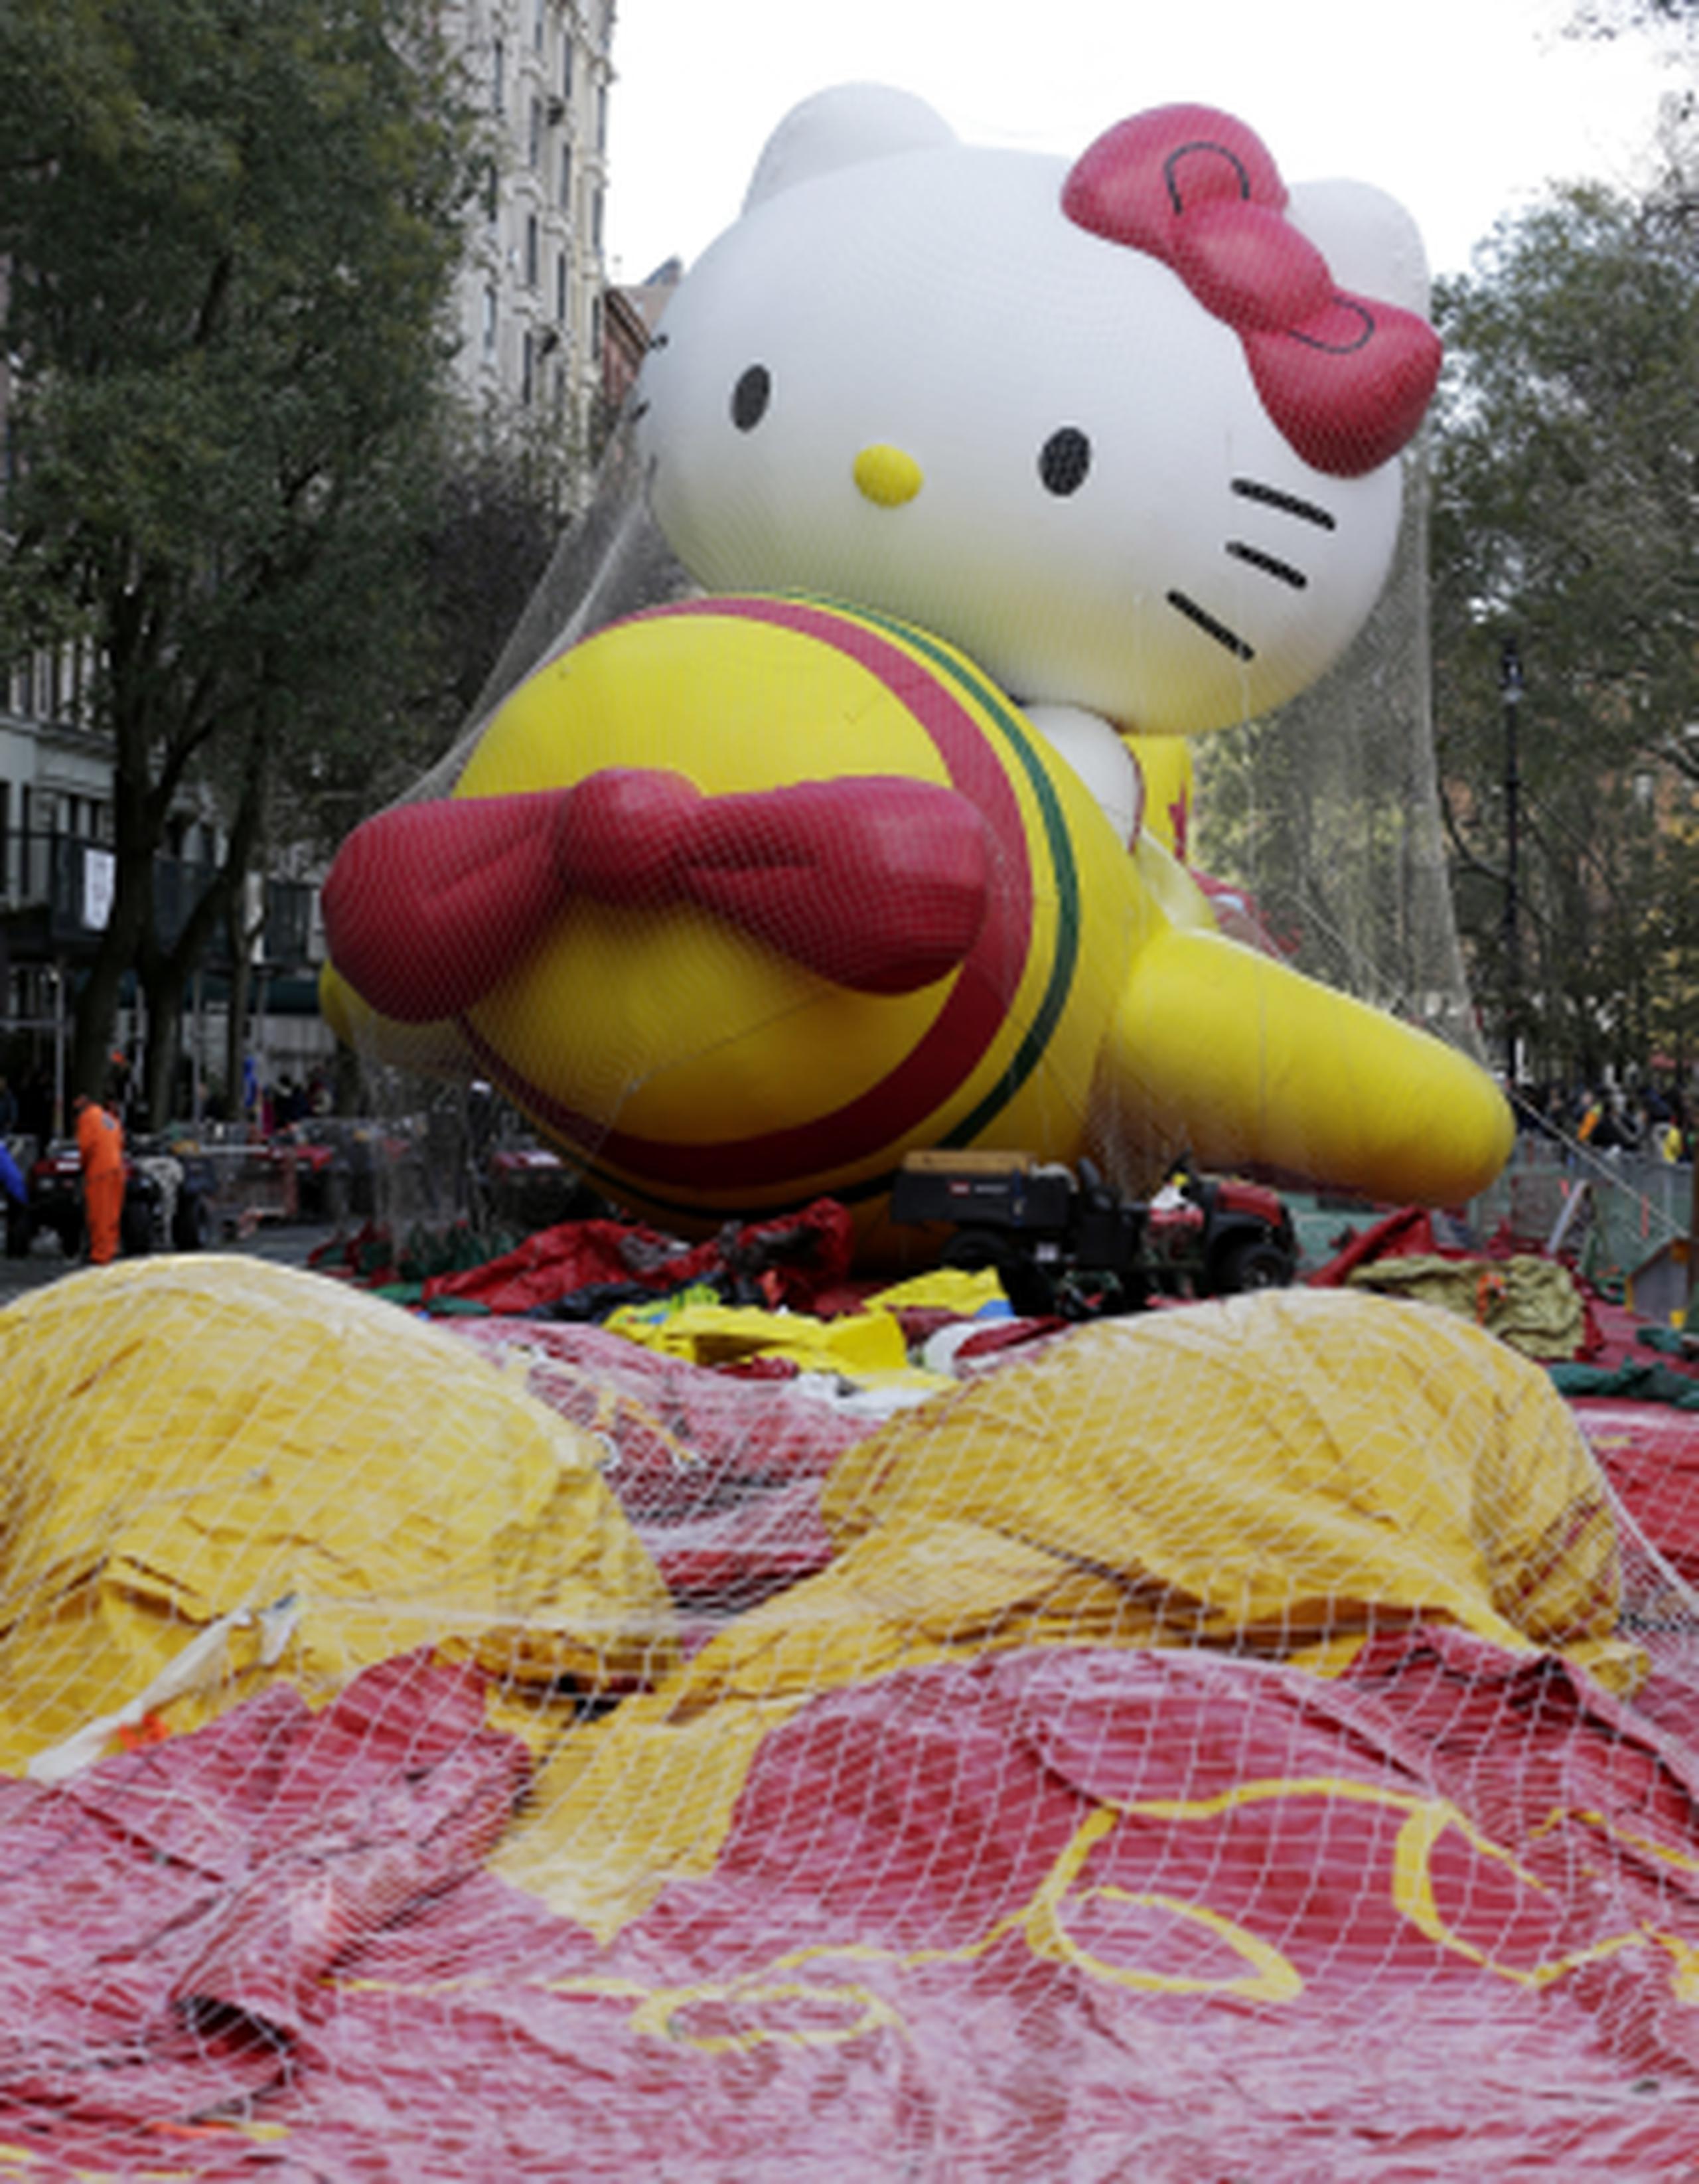 Decenas de globos flotarán el jueves en el tradicional Desfile del Día de Acción de Gracias de Macy’s. (AP)